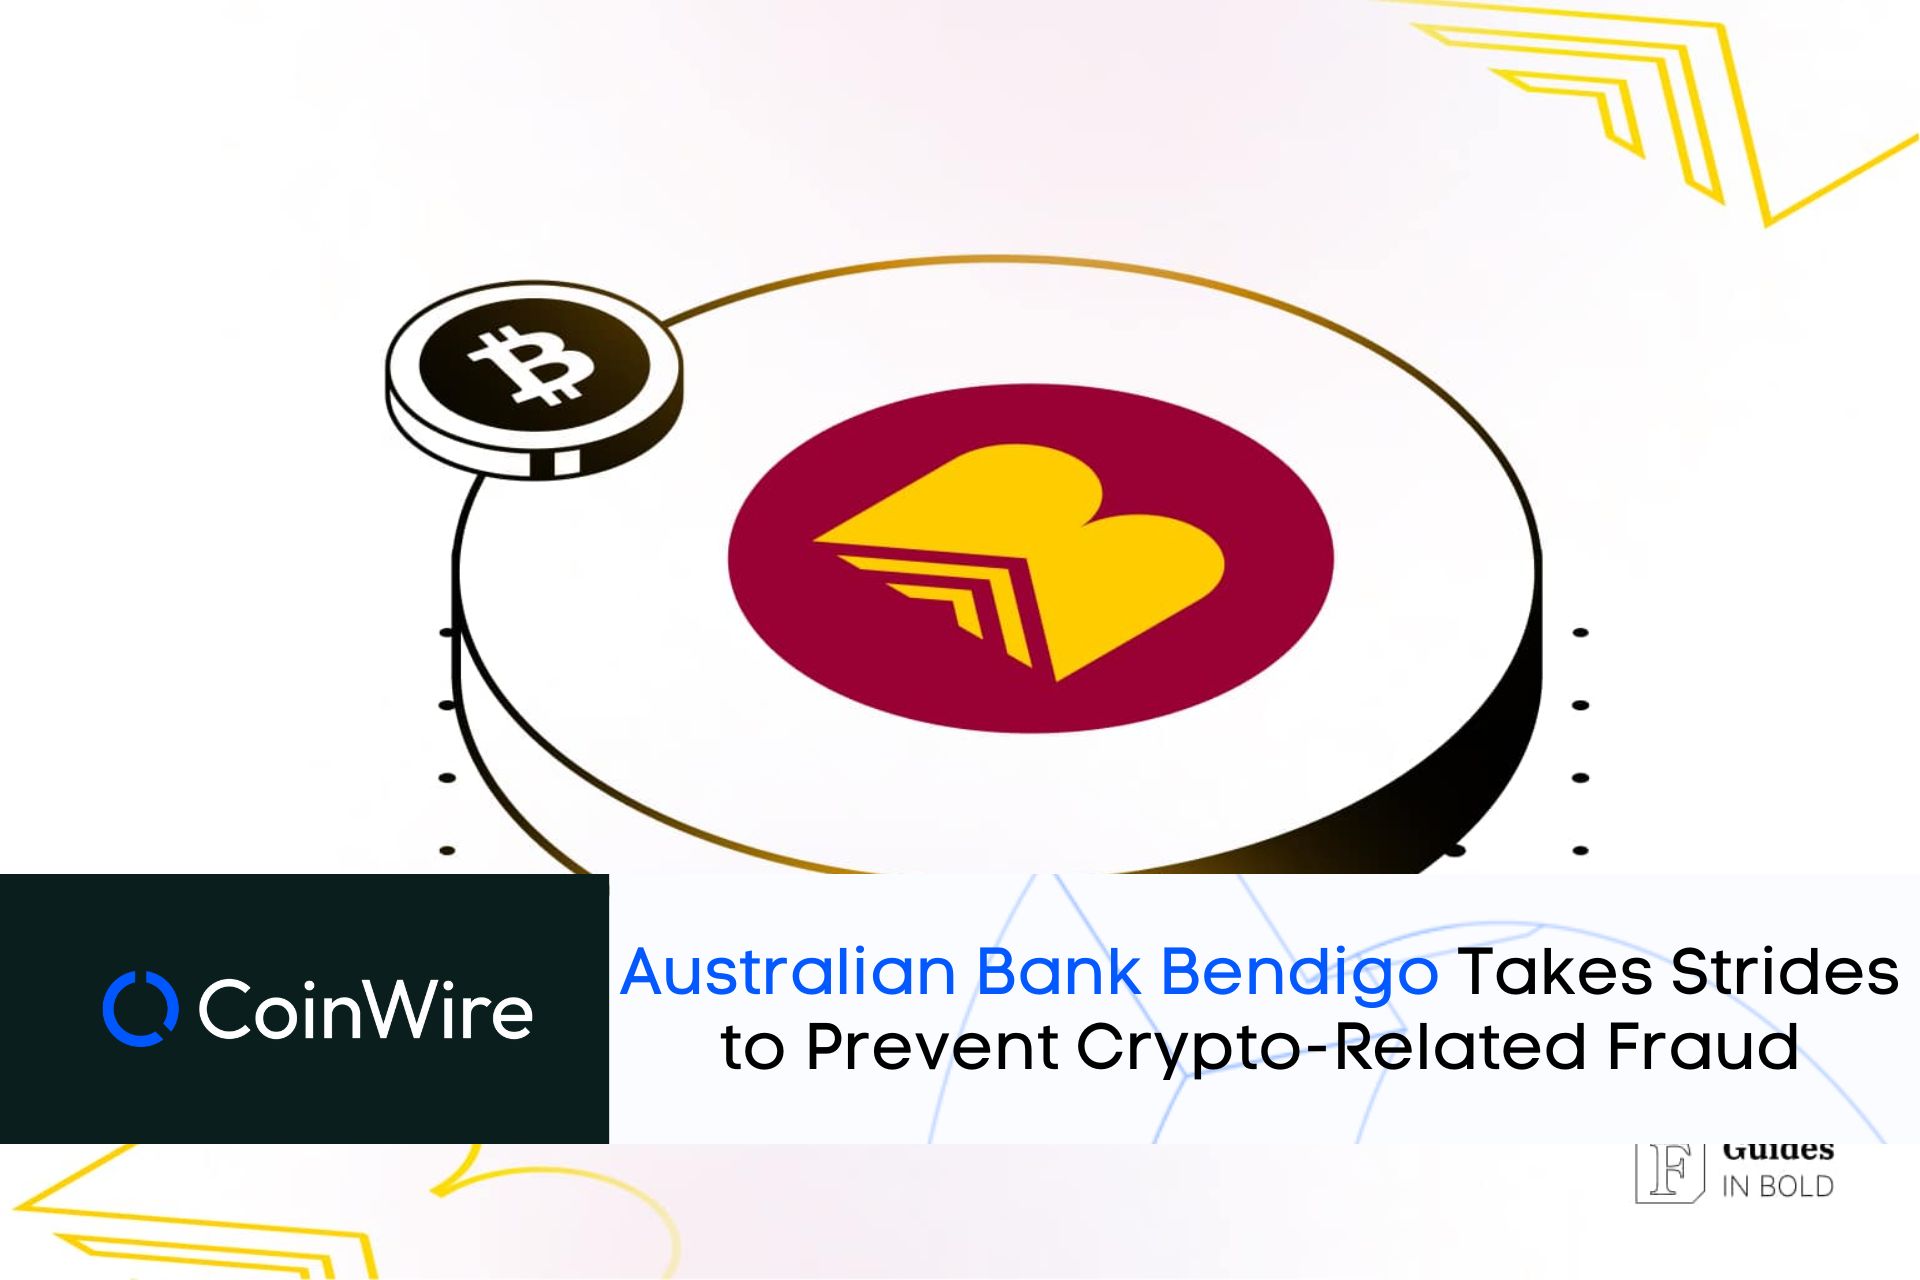 Australian Bank - Bendigo Takes Strides To Prevent Crypto-Related Fraud